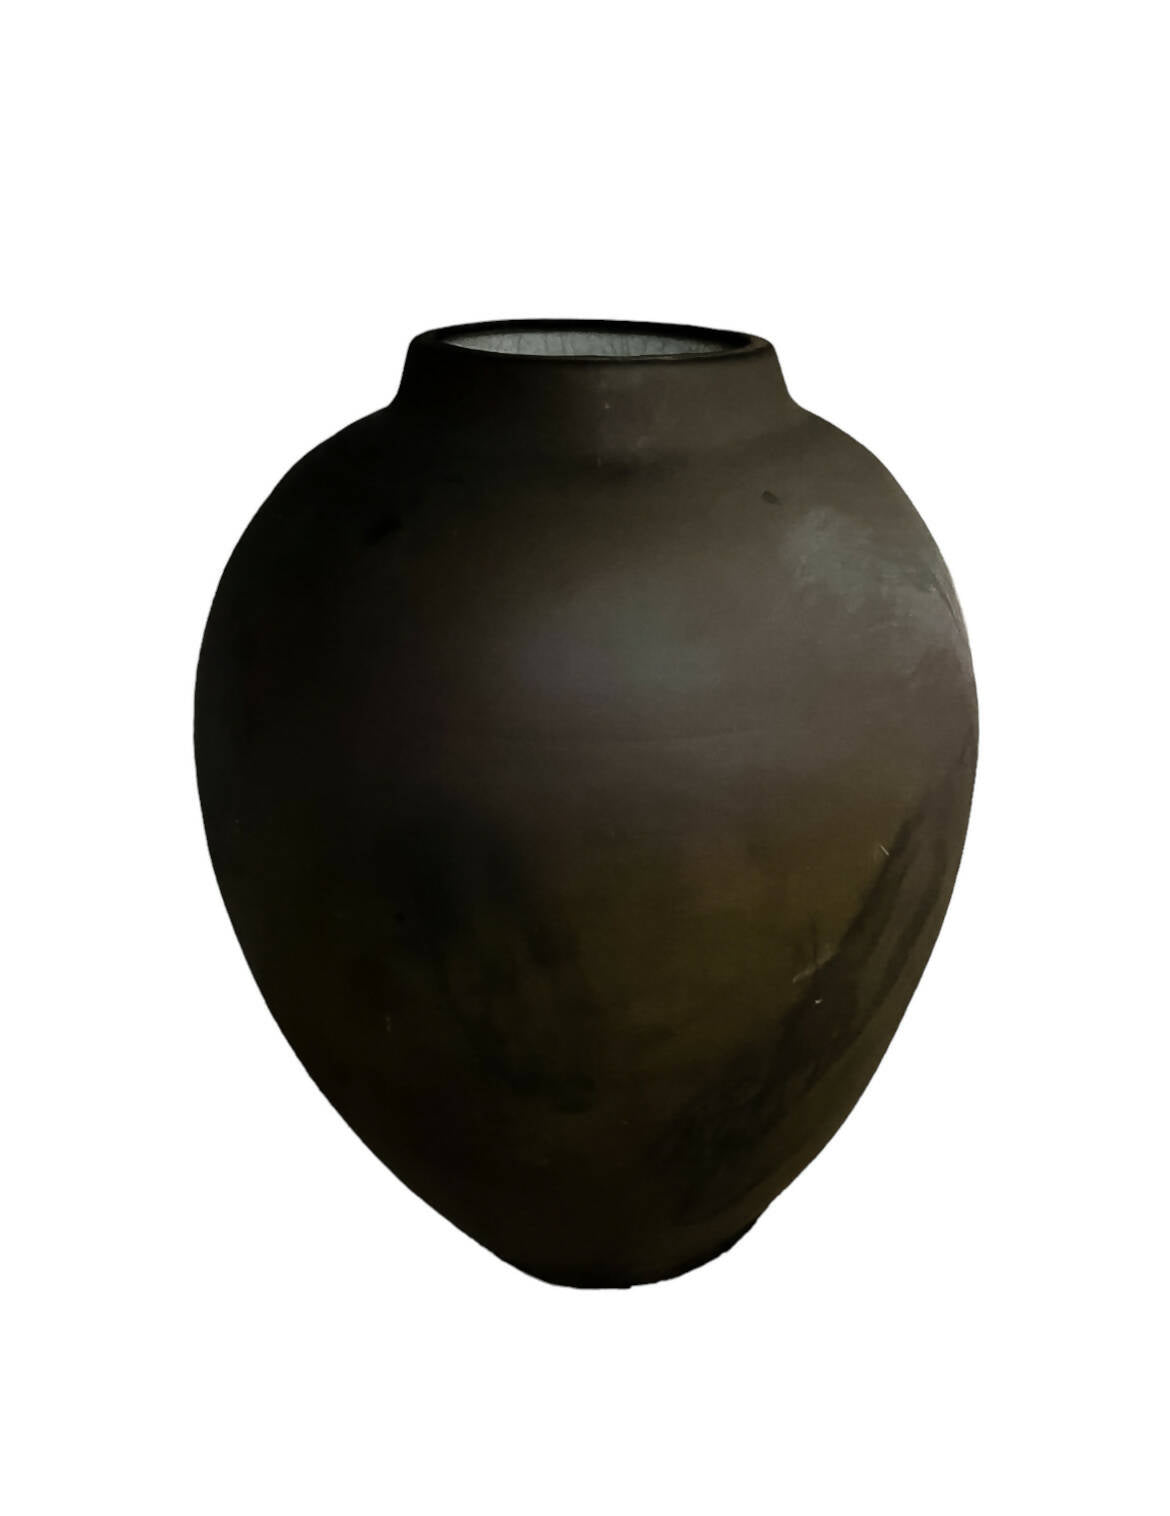 Vintage Raku Fired Vase, Signed